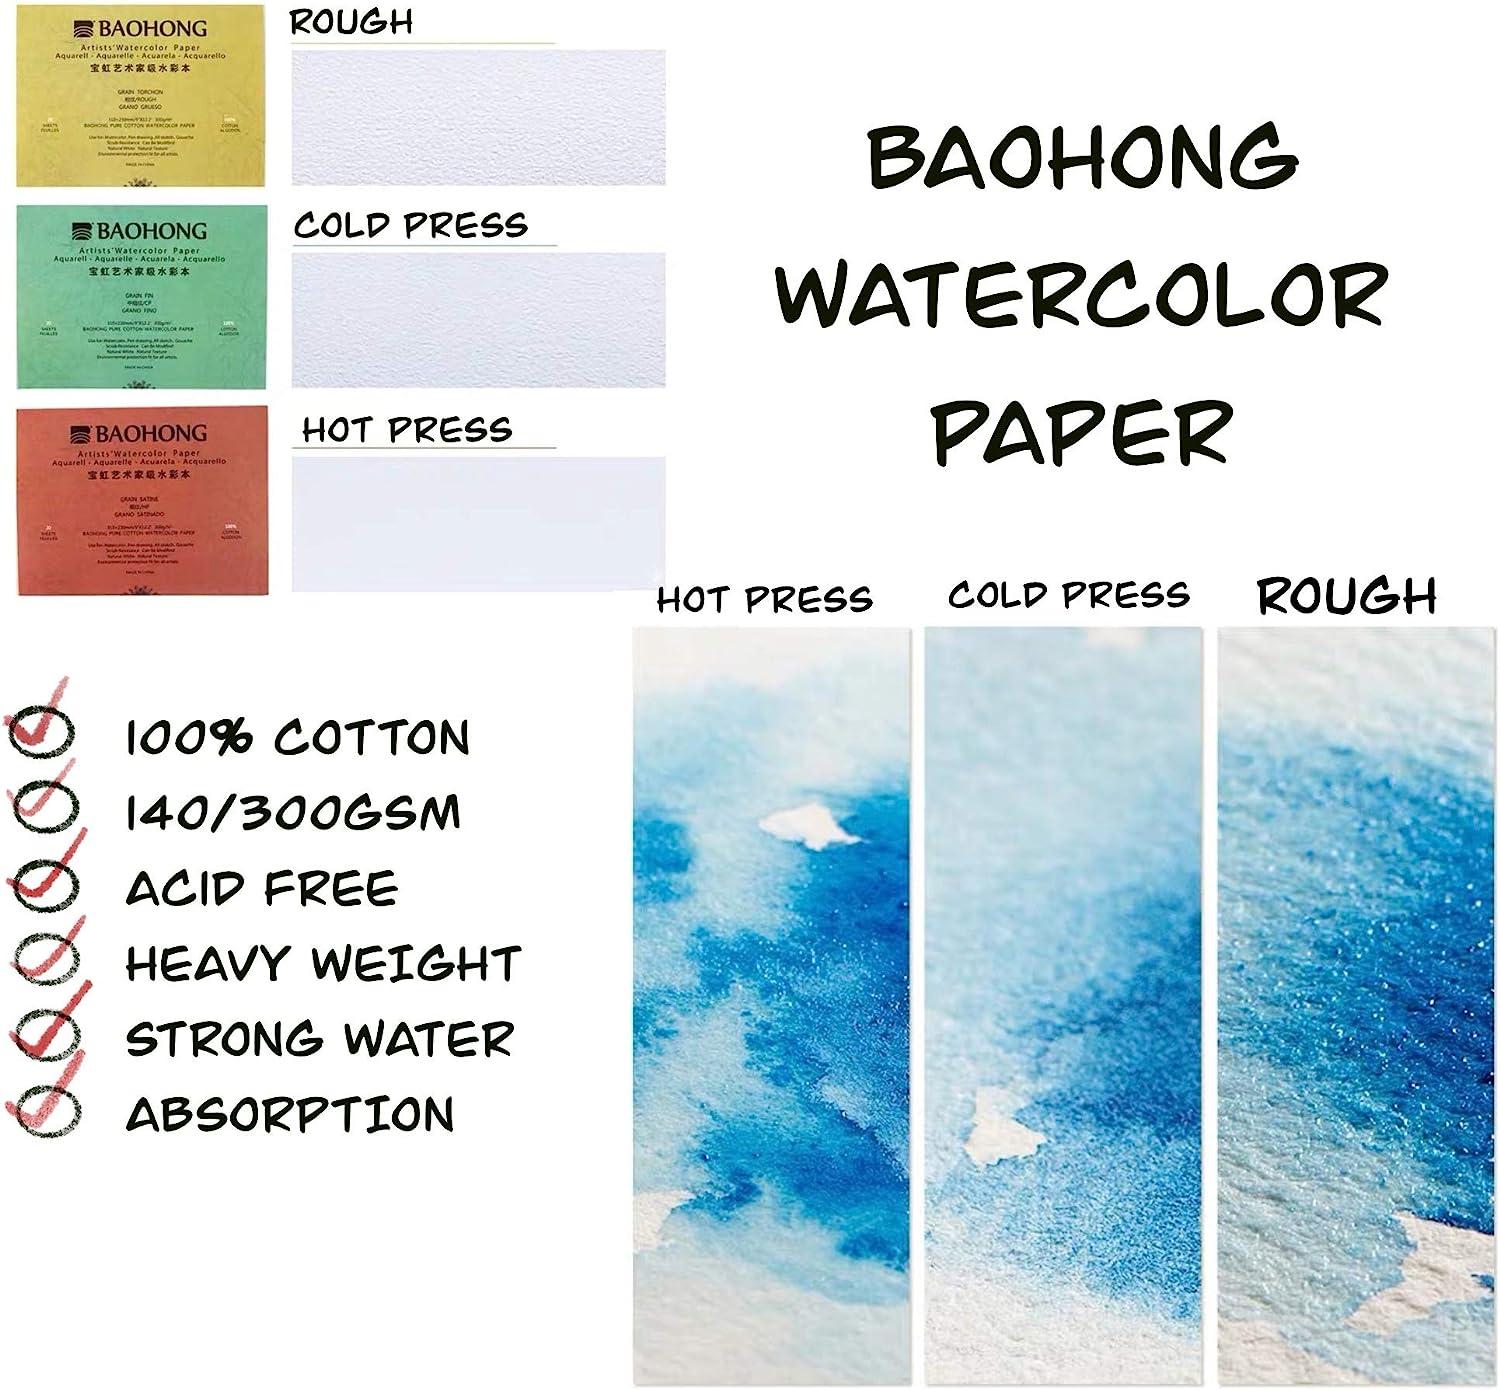 Watercolor Paper Block, BAOHONG Artists' Watercolor Block, 100% Cotton,  Acid-Free, 140LB/300GSM, Cold Press Textured, 20 Sheets per Block (Textured  Cold Press 4.9X7)